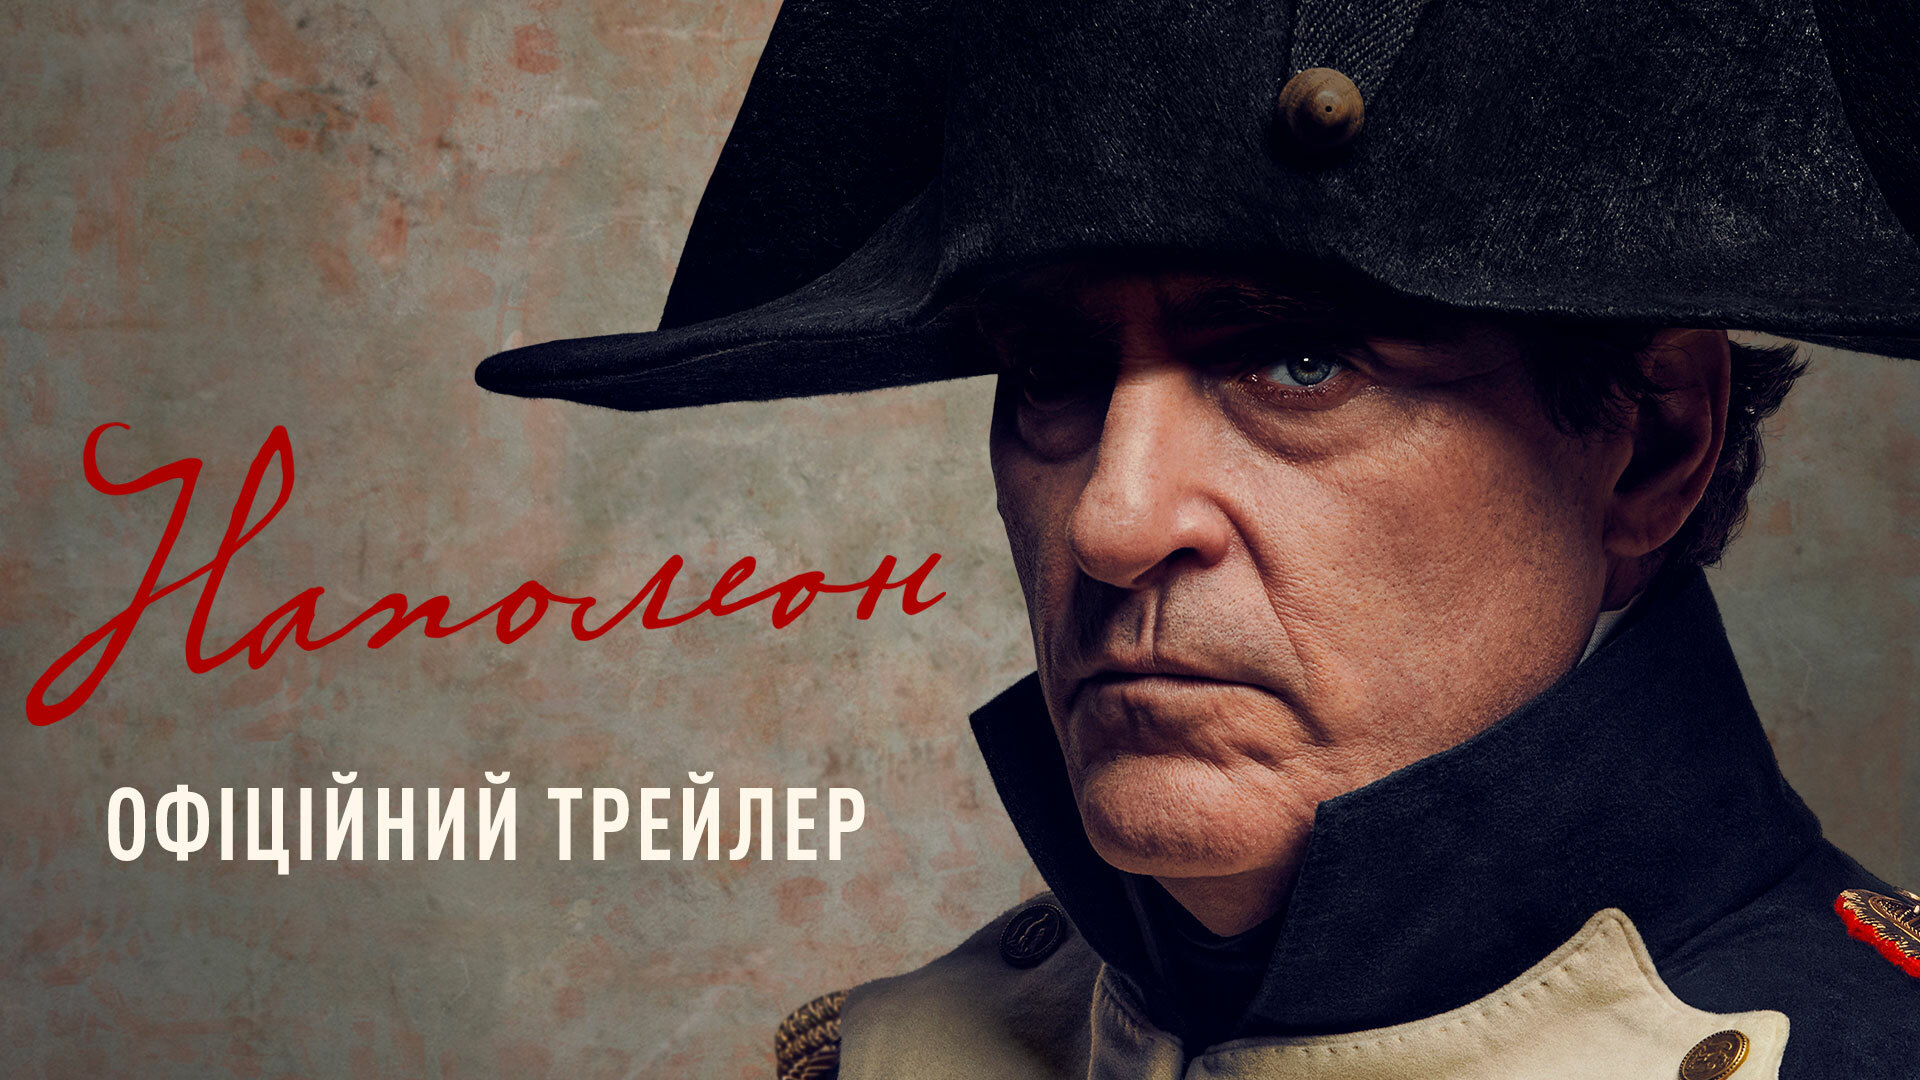 Вийшов трейлер нової епічної історії "Наполеон" з Гоакіном Феніксом в головній ролі 